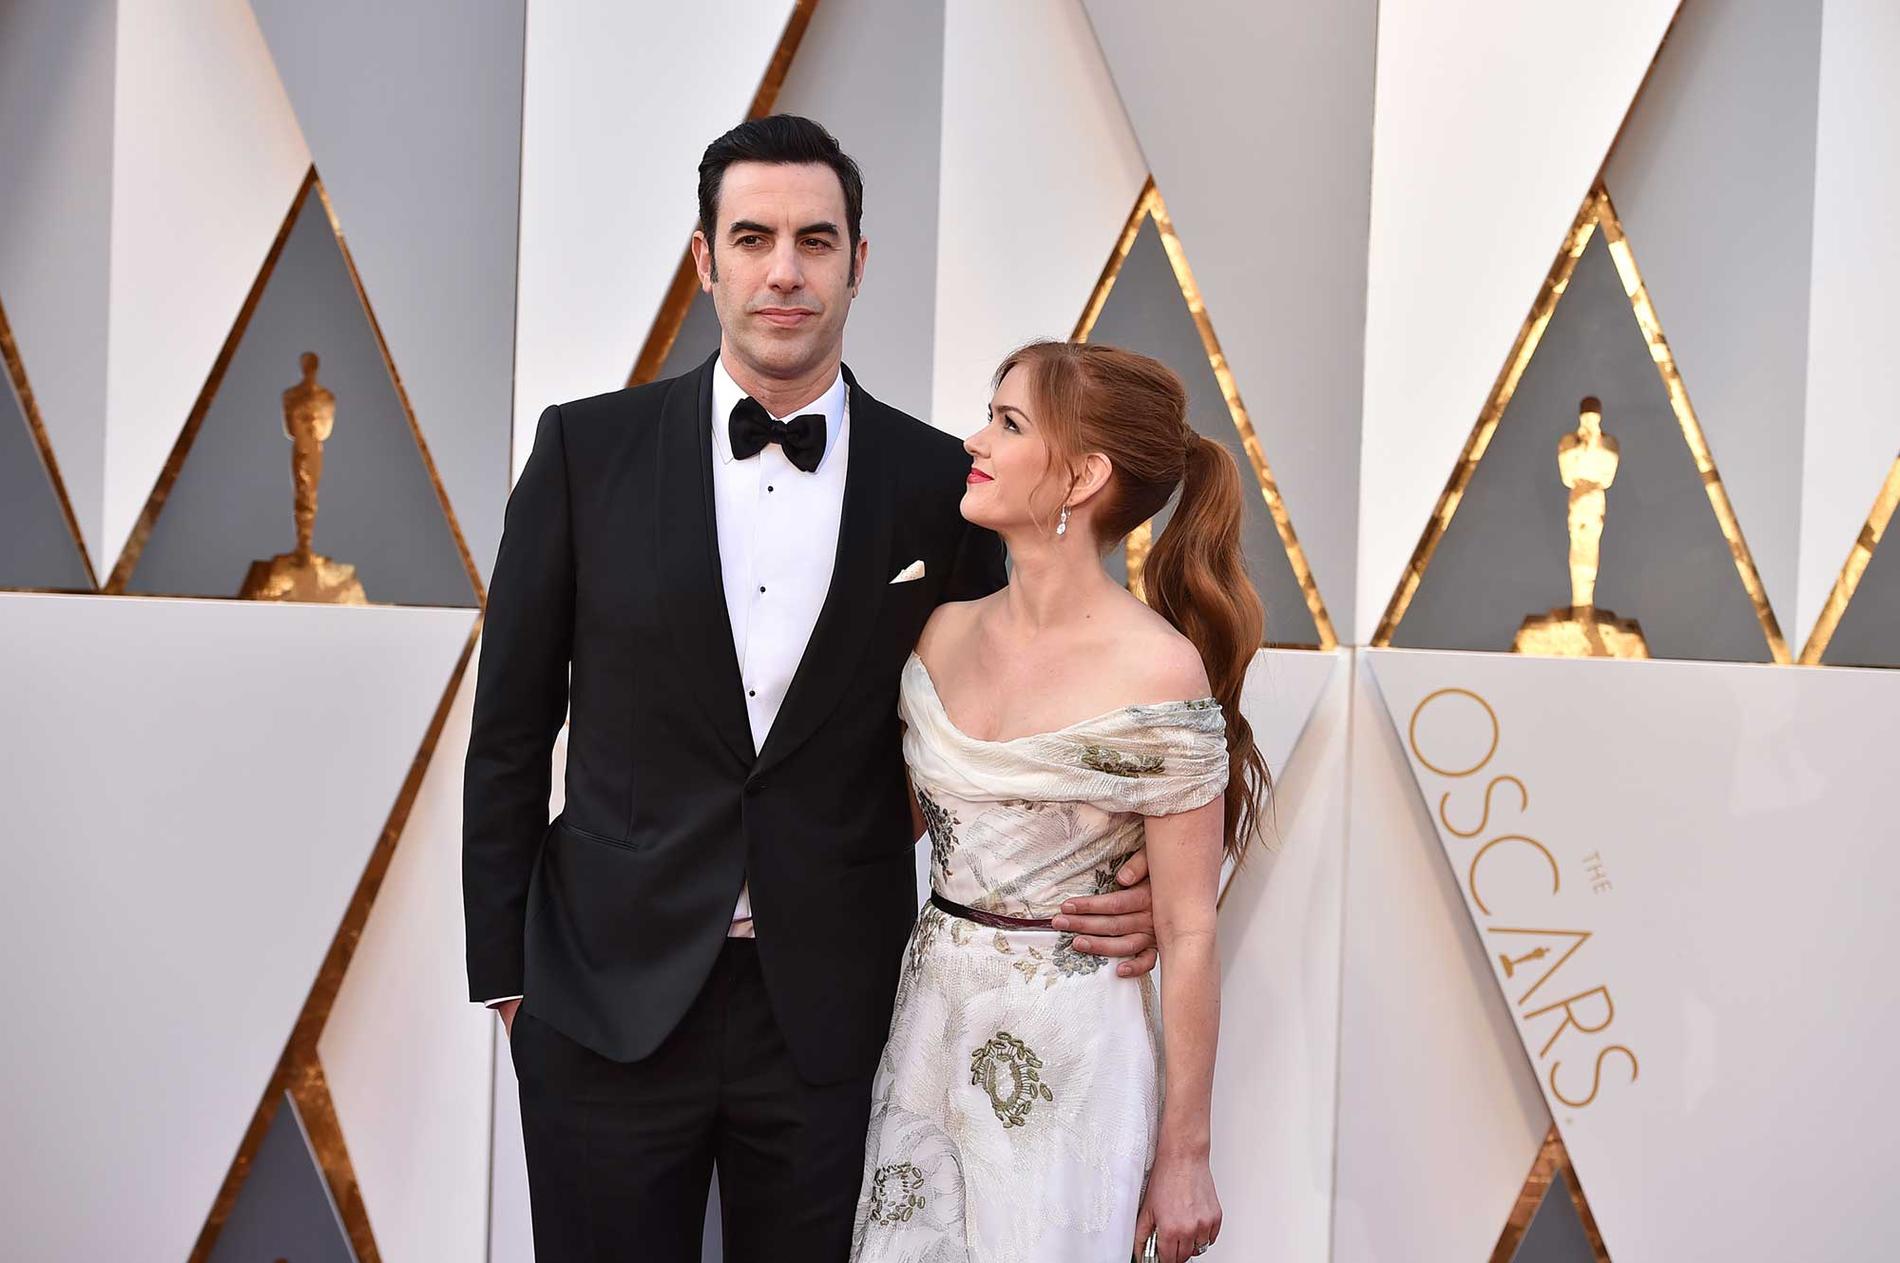 Sacha Baron Cohen anländer till Oscarsgalan som sig själv, tillsammans med Isla Fisher.